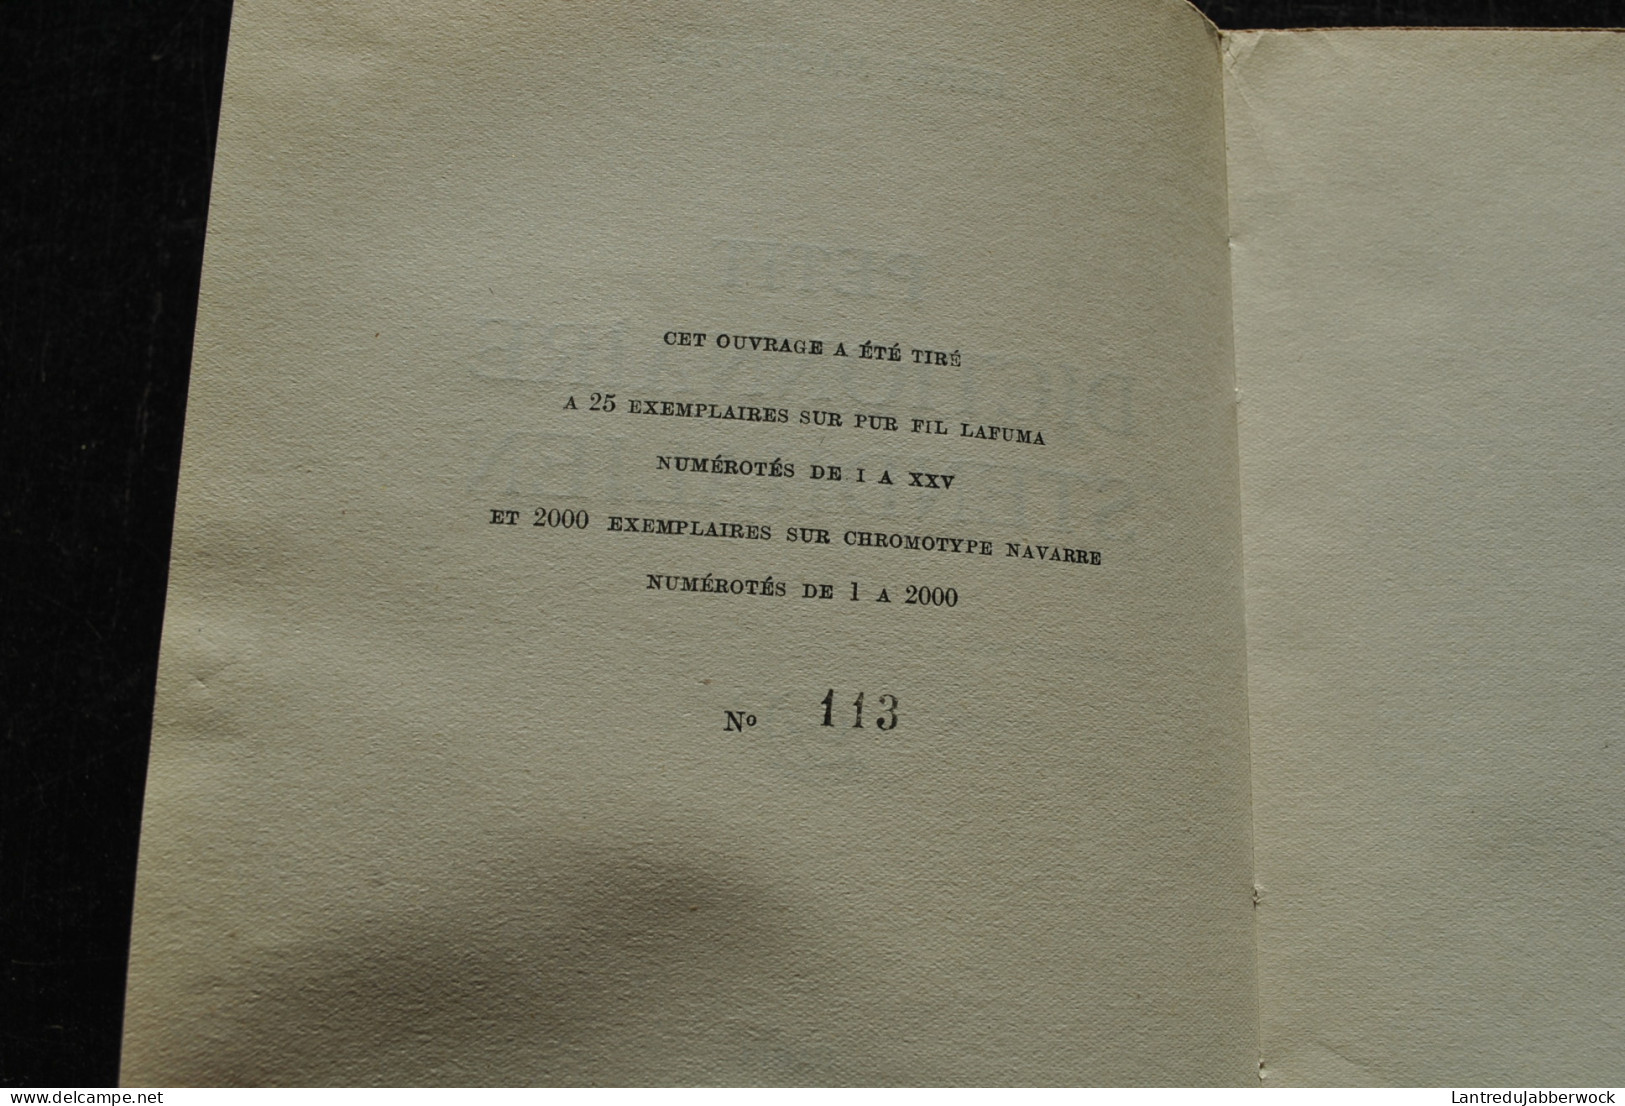 Henri MARTINEAU Petit Dictionnaire Stendhalien Le Divan 1948 Tirage Limité 113/2000 STENDHAL Personnages RARE - 1901-1940